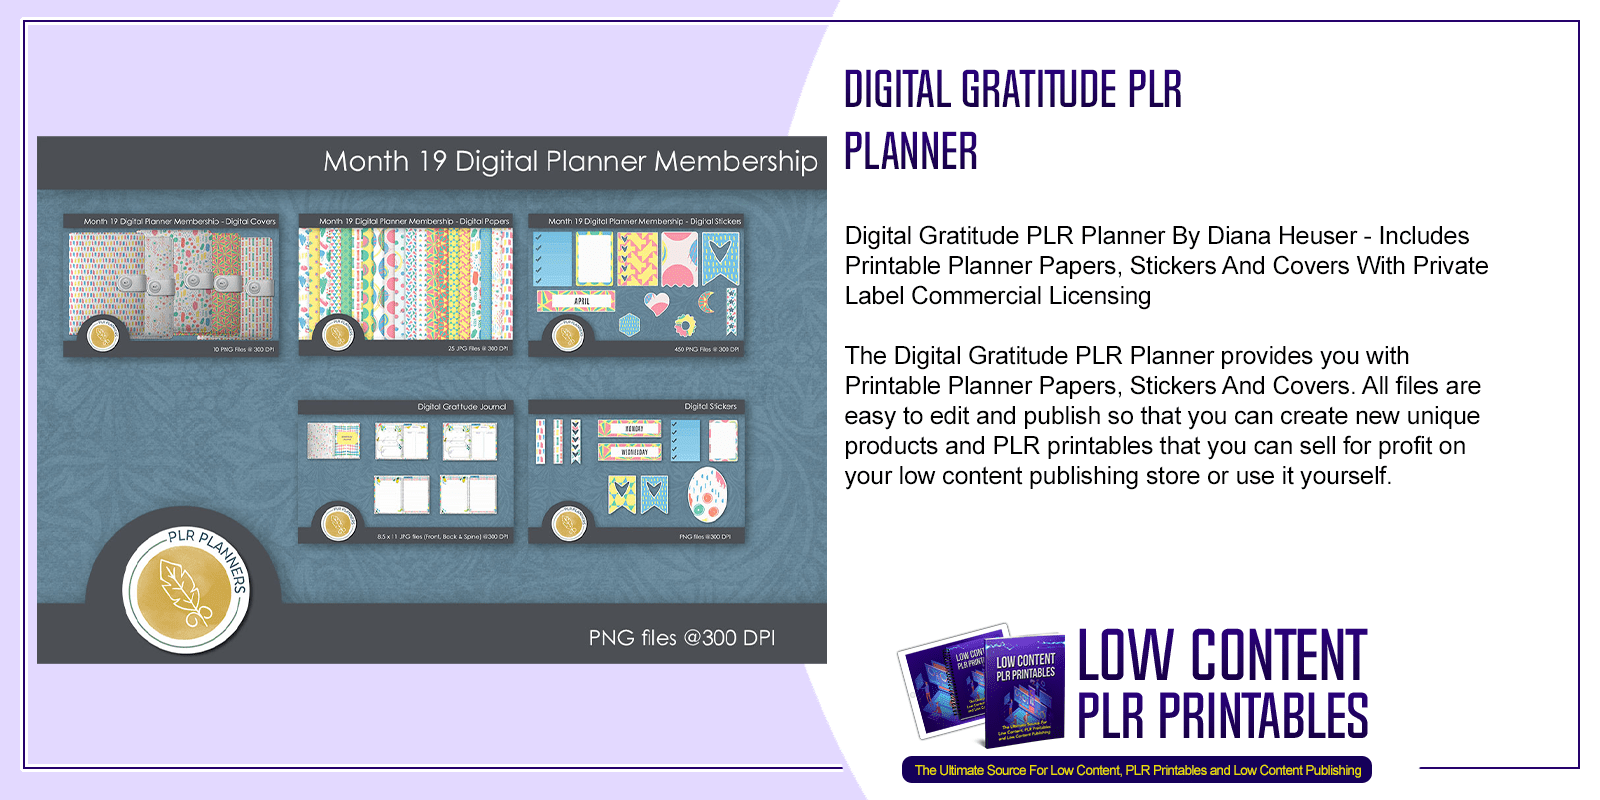 Digital Gratitude PLR Planner